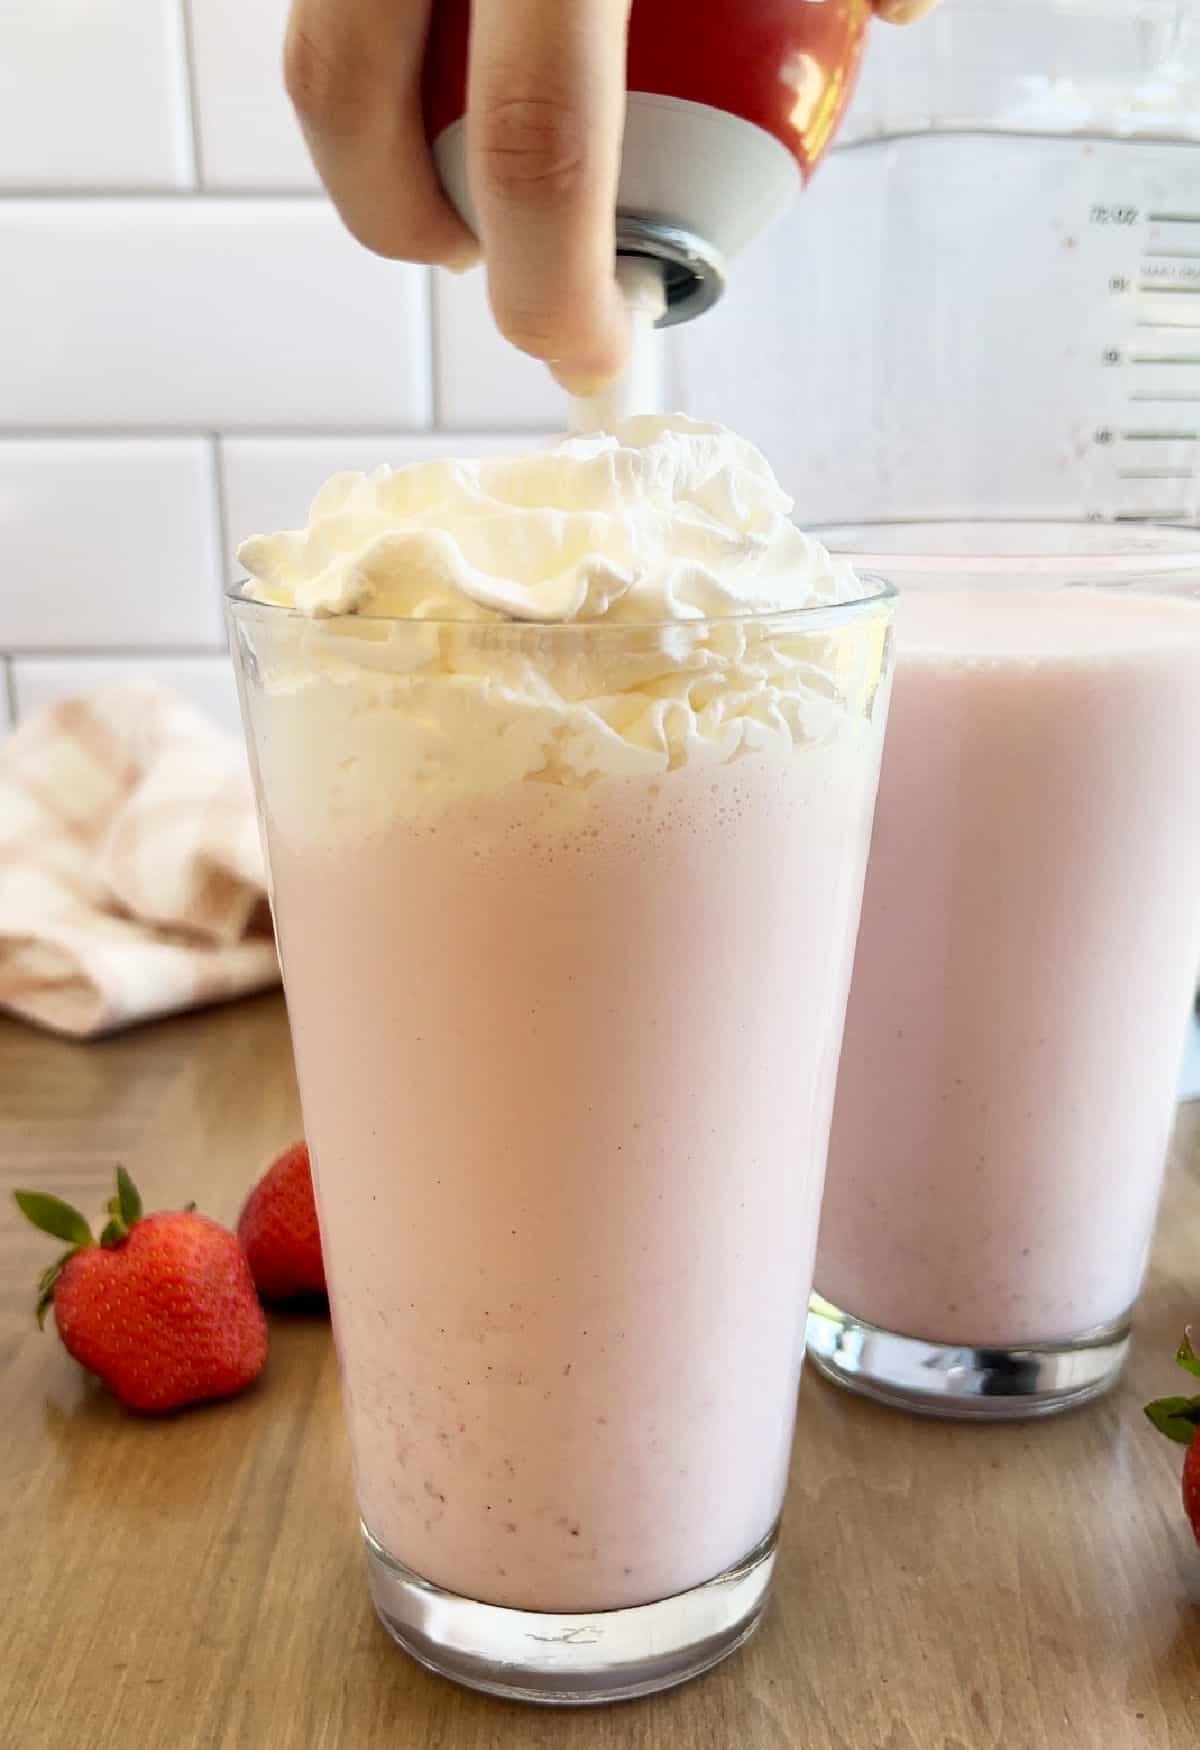 Reddi-Wip on strawberry milkshake.